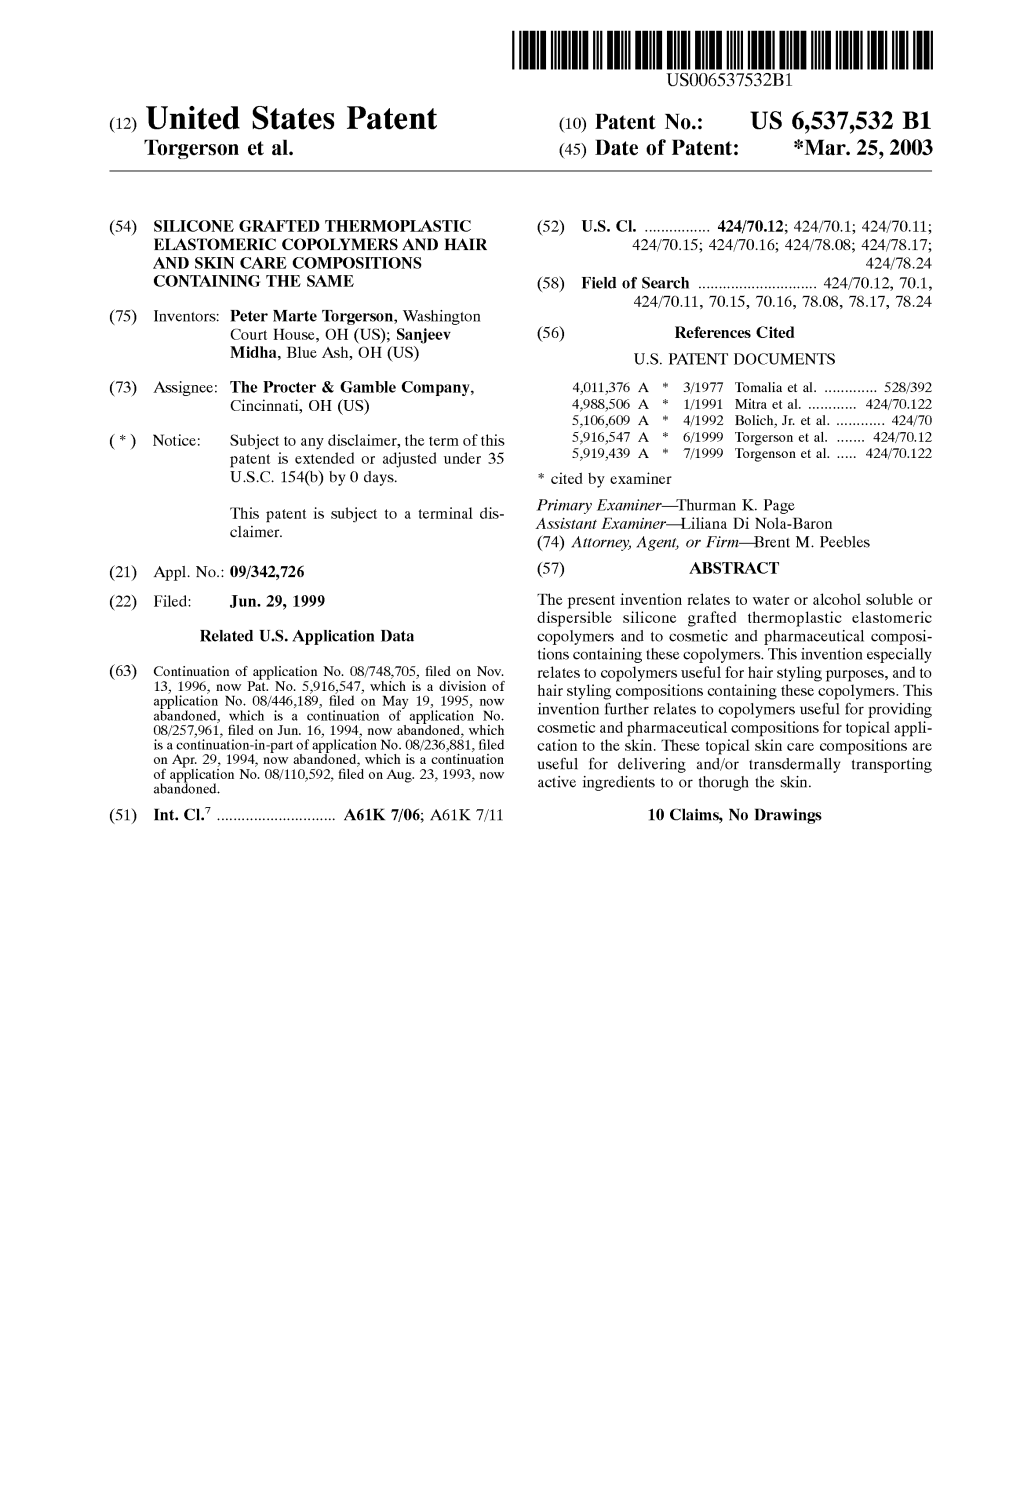 United States Patent (10) Patent No.: US 6,537,532 B1 Torgerson Et Al